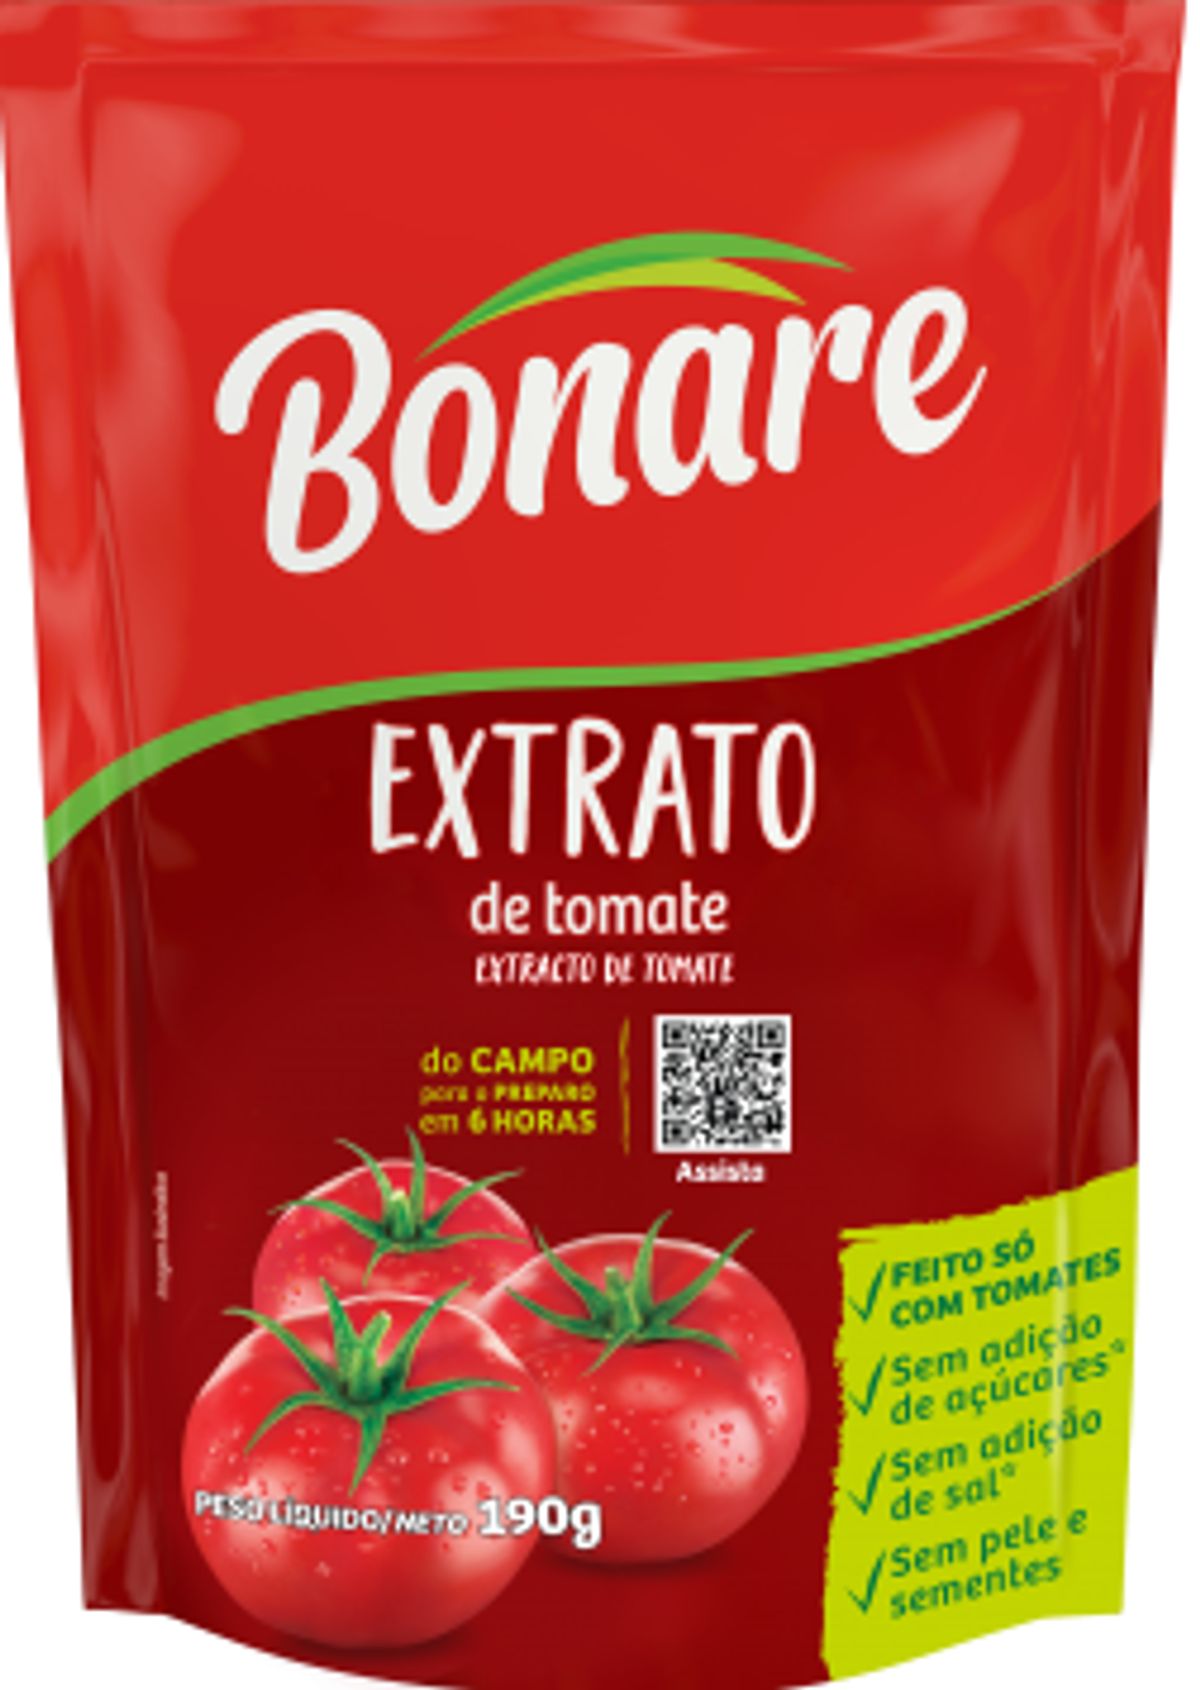 Extrato de Tomate Bonare Sache 190g